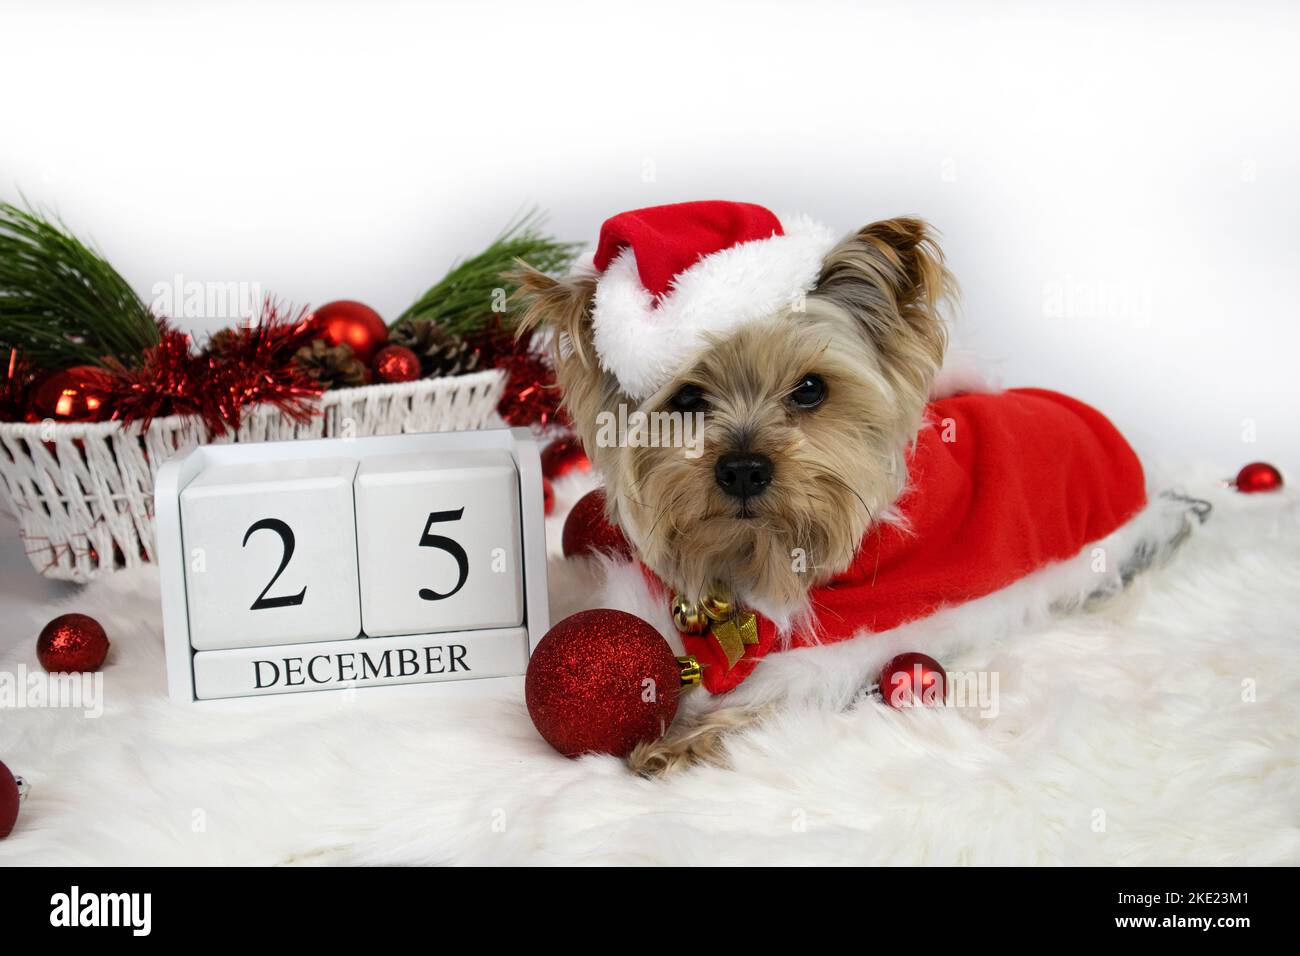 Weihnachten. Yorkshire Terrier Hund im weihnachtsmann Kostüm und 25 dezember Kalender Stockfoto